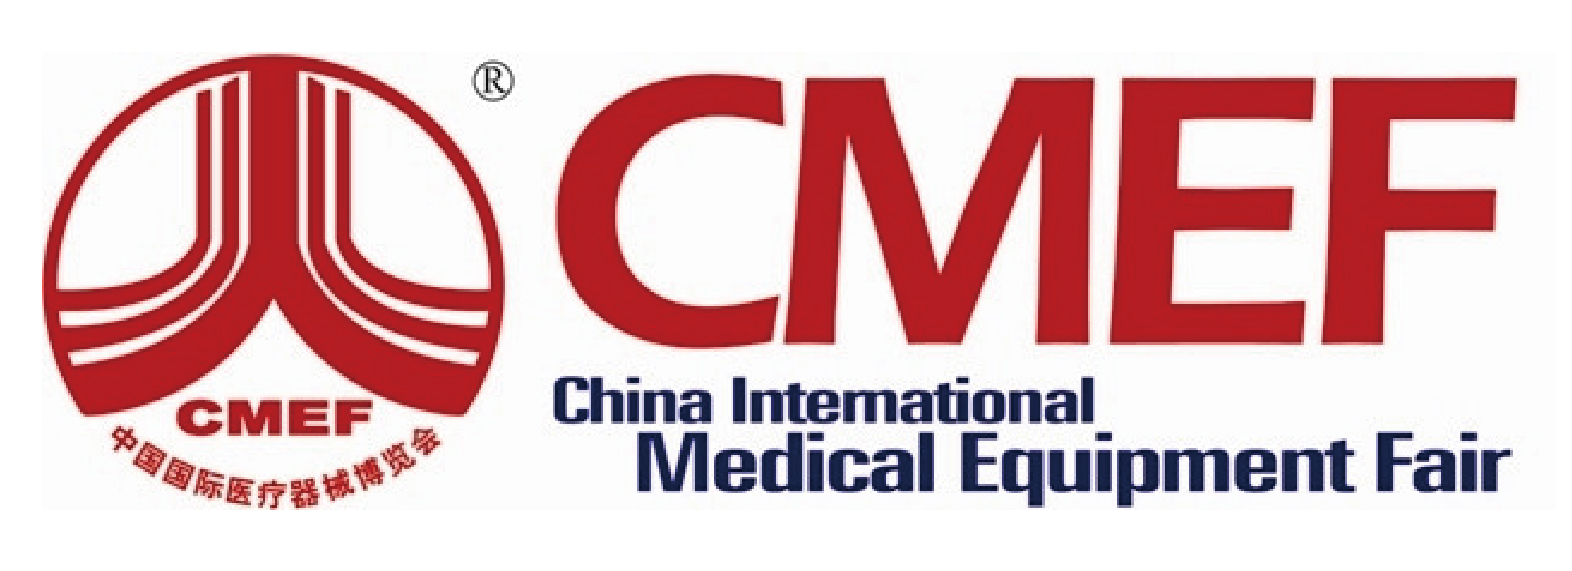 ¡Rixin Medical lo invita a venir a Shenzhen CMEF!